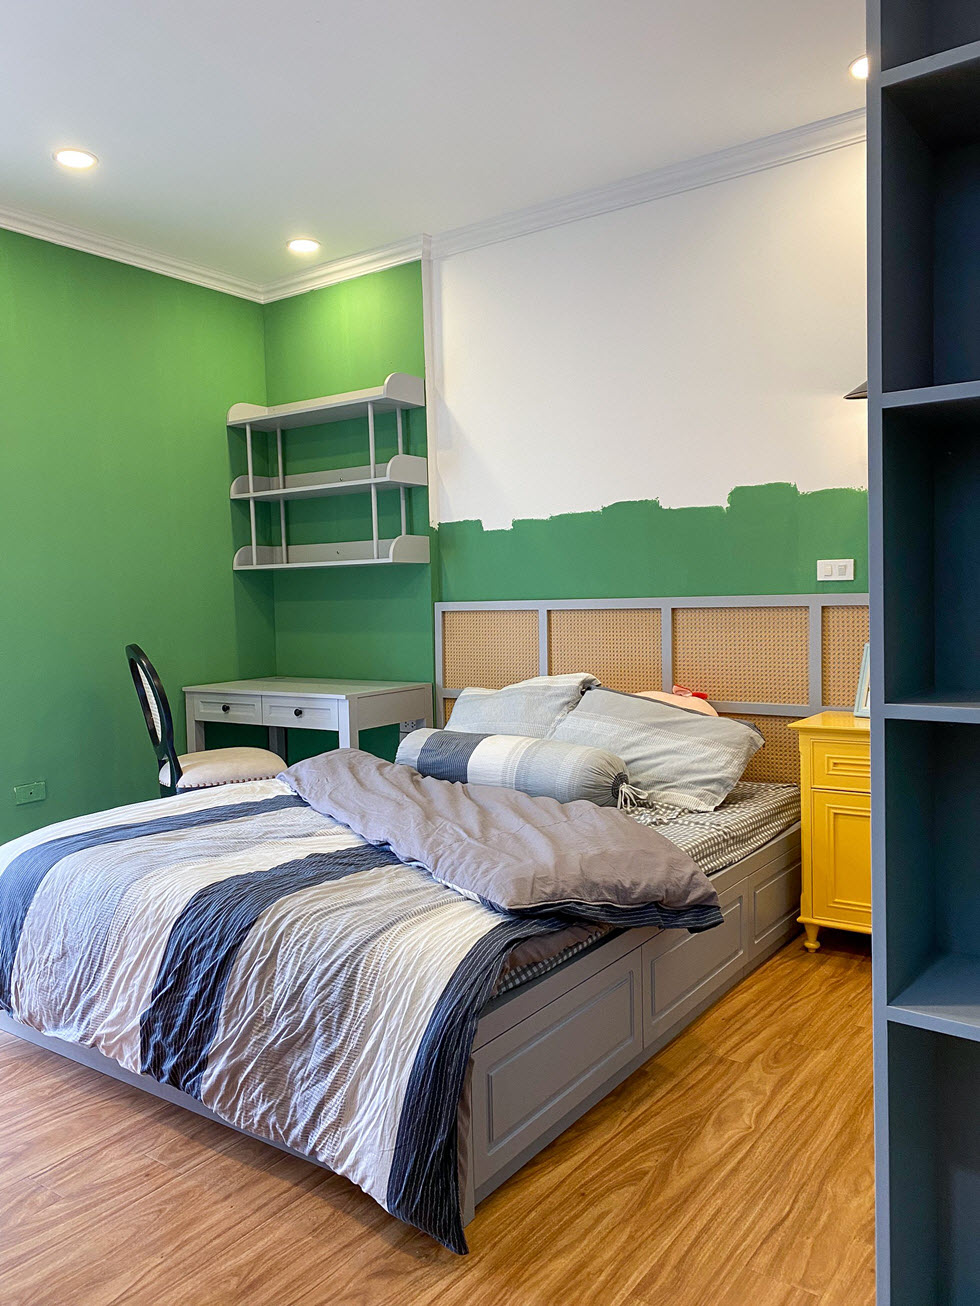 Với cách phối màu tinh tế, vừa đủ, sắc xanh lá tạo cảm giác nhẹ nhàng, thư thái cho không gian phòng ngủ.